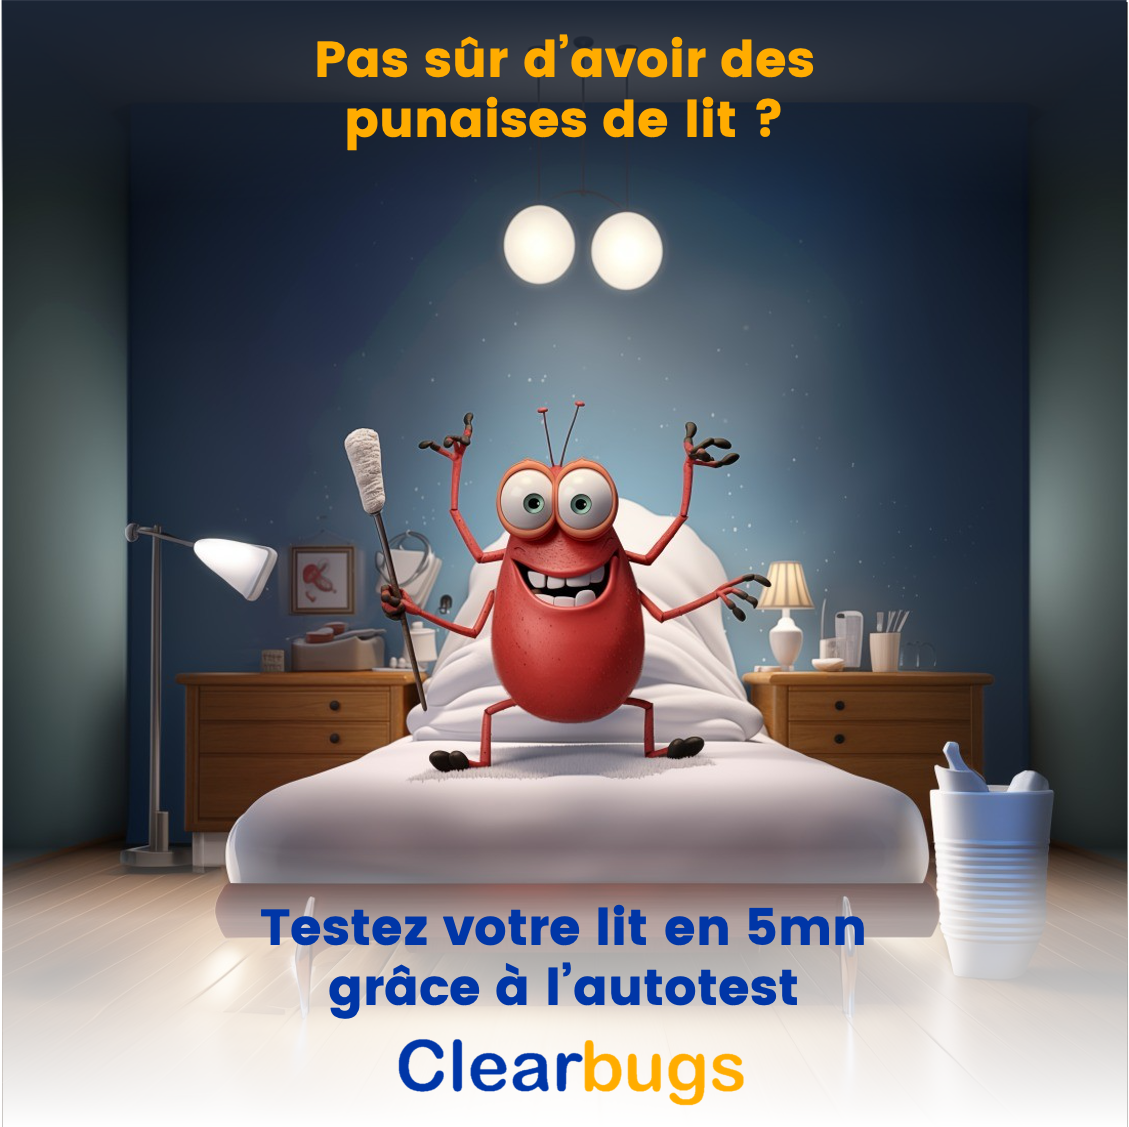 Clearbugs - Test de détection de punaises de lit